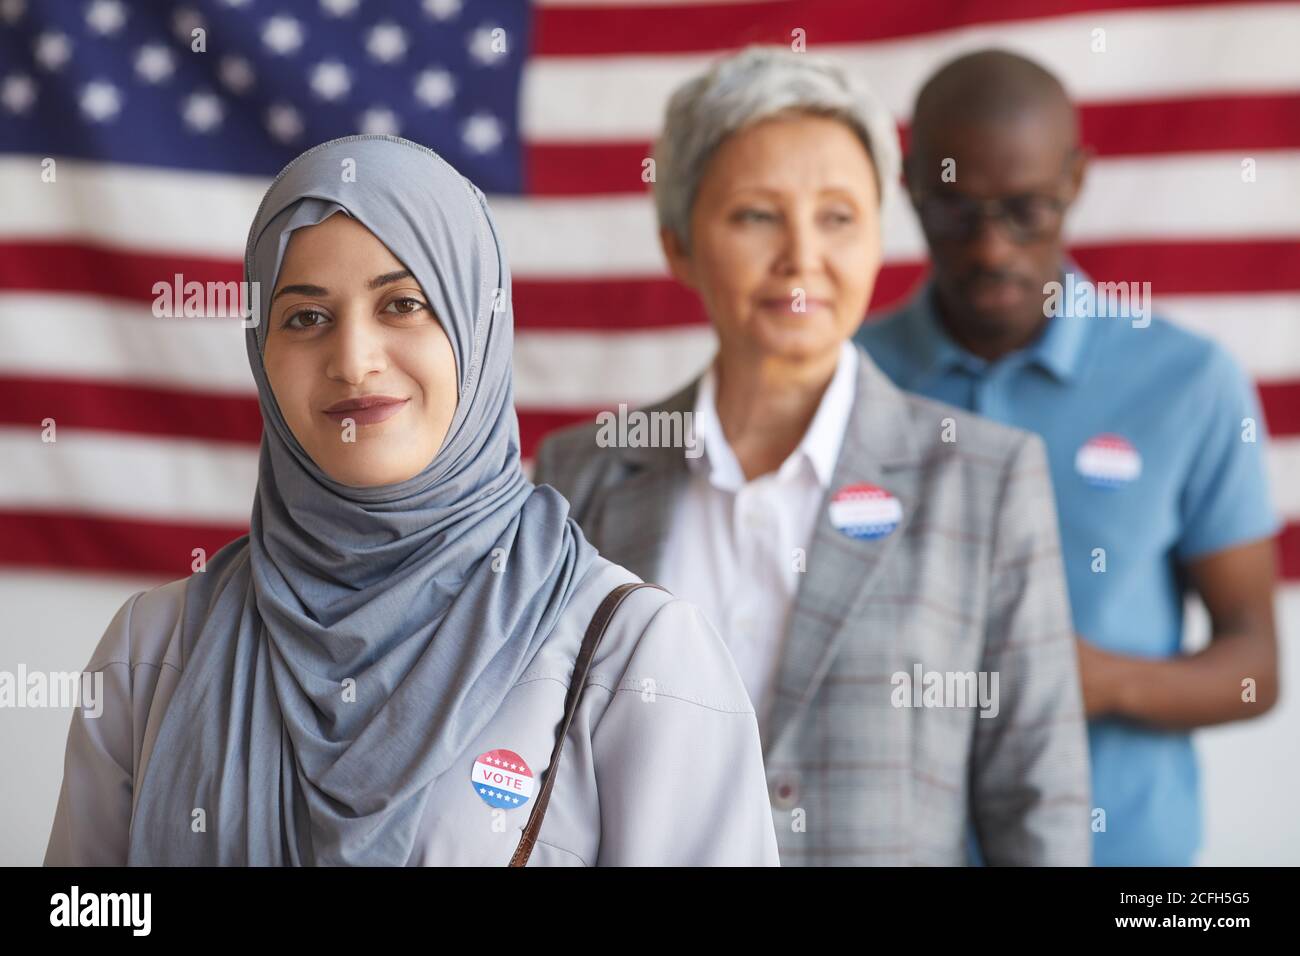 Grupo multiétnico de personas en la mesa de votación el día de las elecciones, se centran en la mujer árabe sonriente con HE VOTADO pegatina mirando la cámara, el espacio de copia Foto de stock